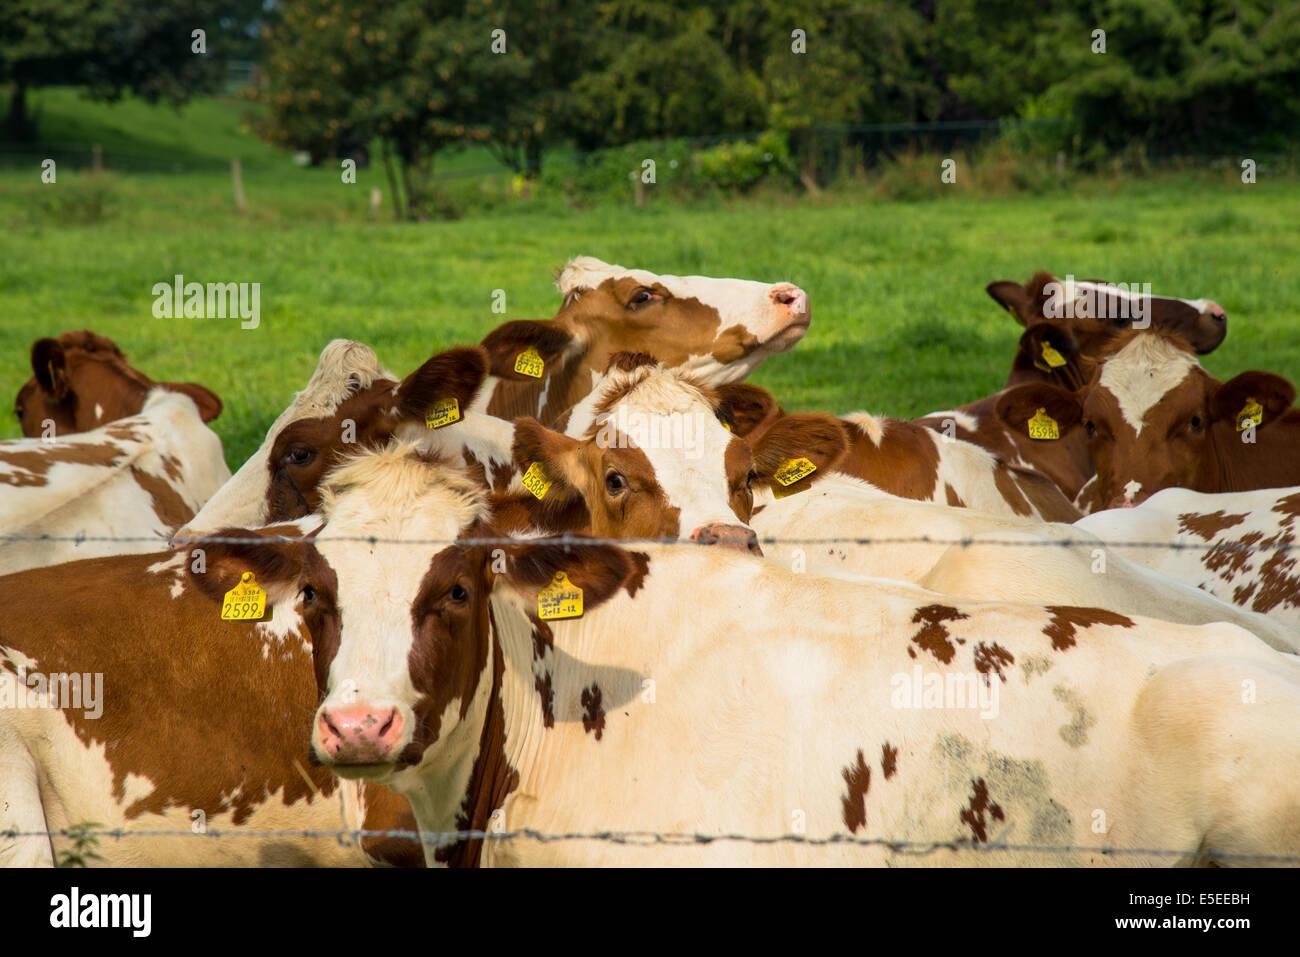 eine Gruppe von braun/weiße Kühe in einem Feld Stockfoto